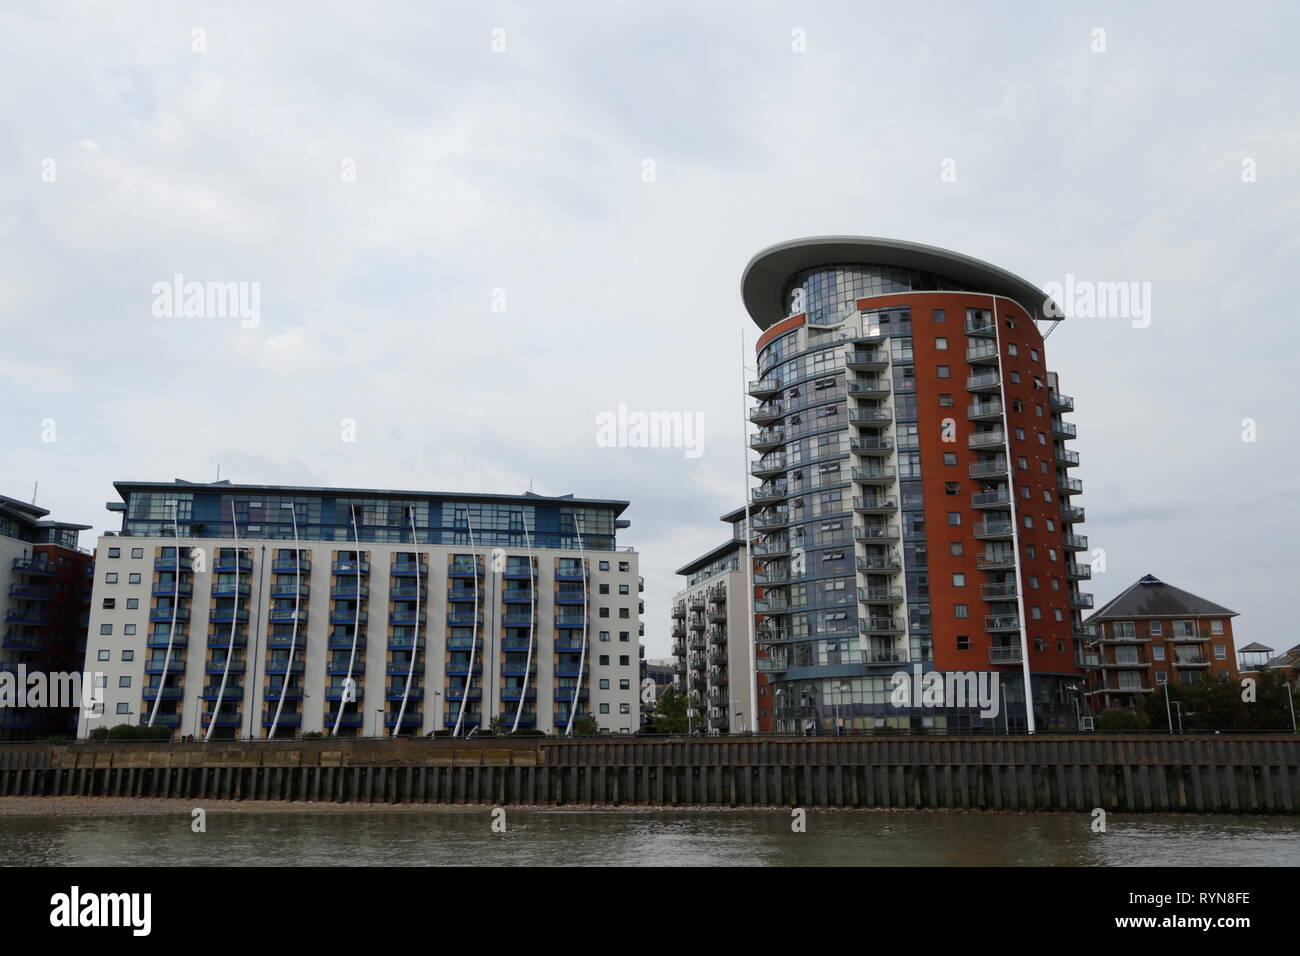 L'esterno della zona residenziale di edifici di appartamenti con balconi, in un moderno stile architettonico, lungo il fiume Tamigi a Londra, Regno Unito. Foto Stock